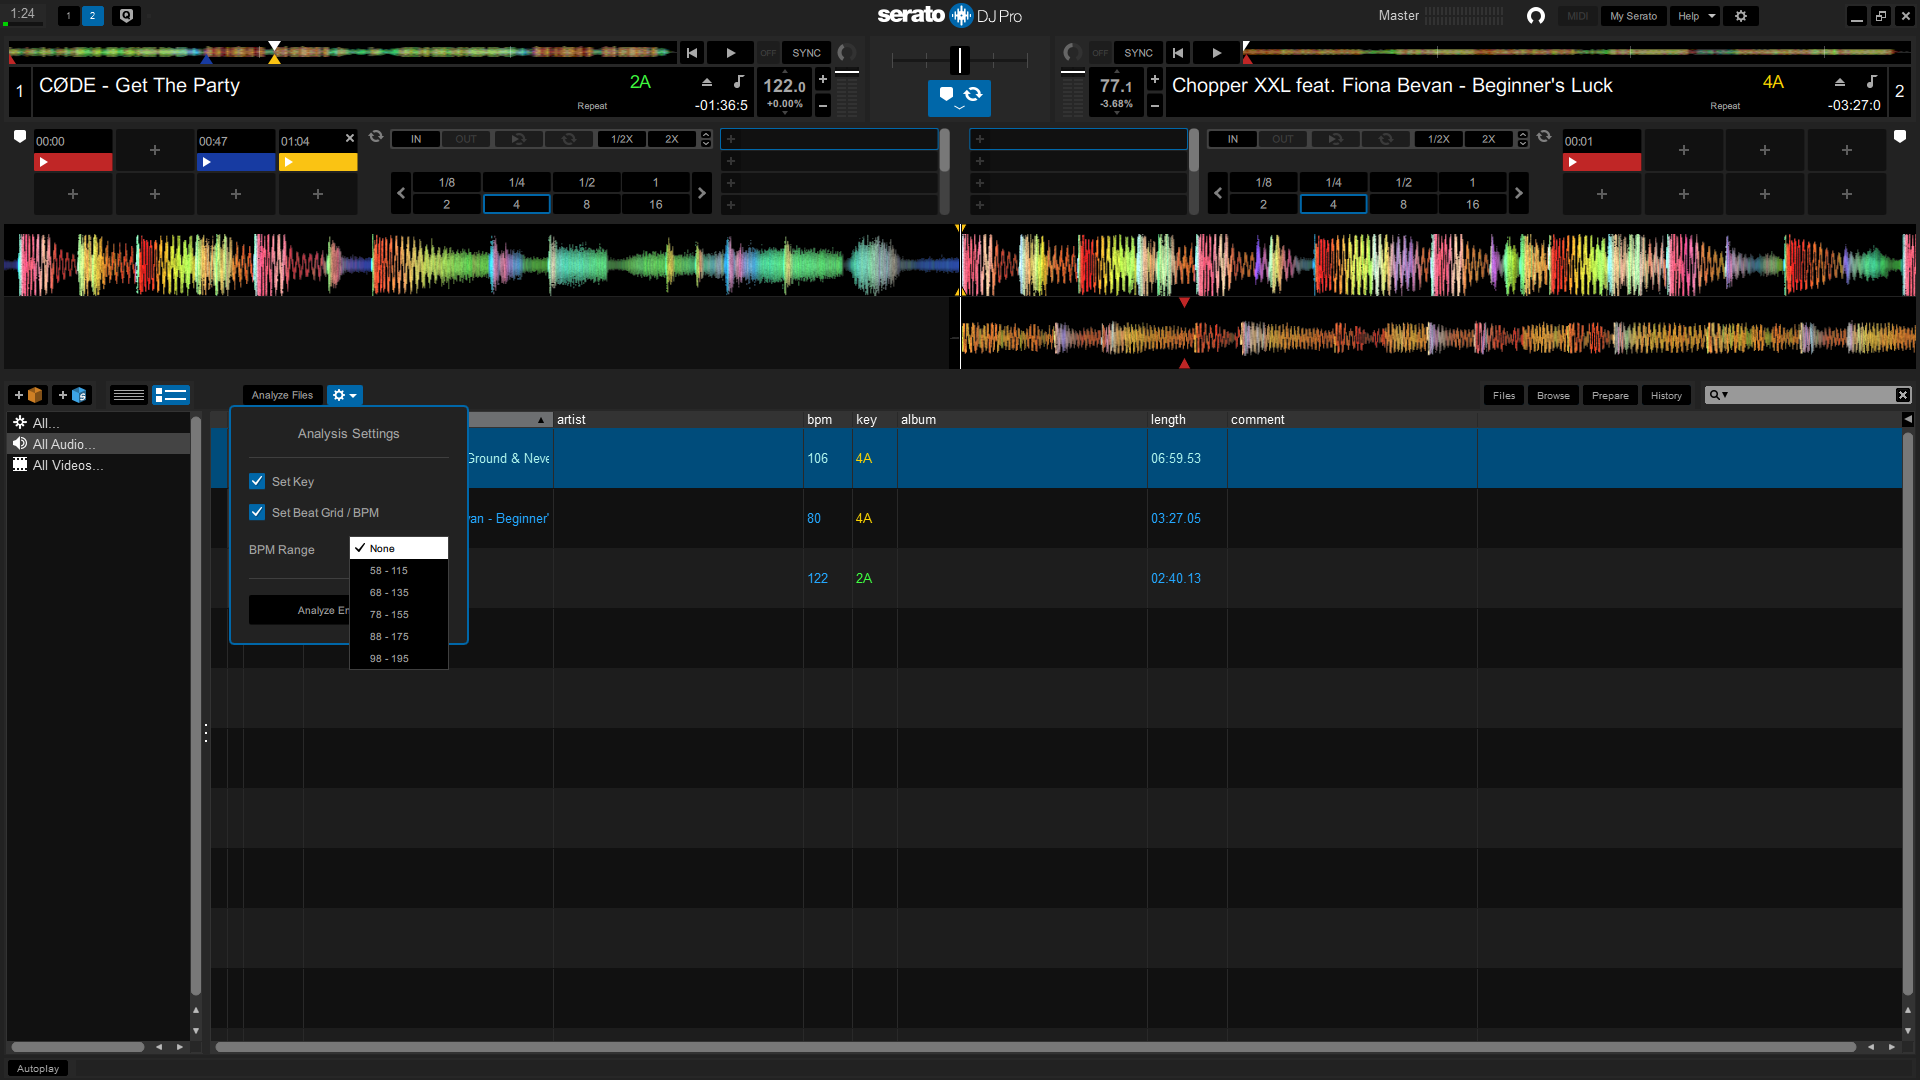 Serato DJ Pro 3.0.10.164 for windows download